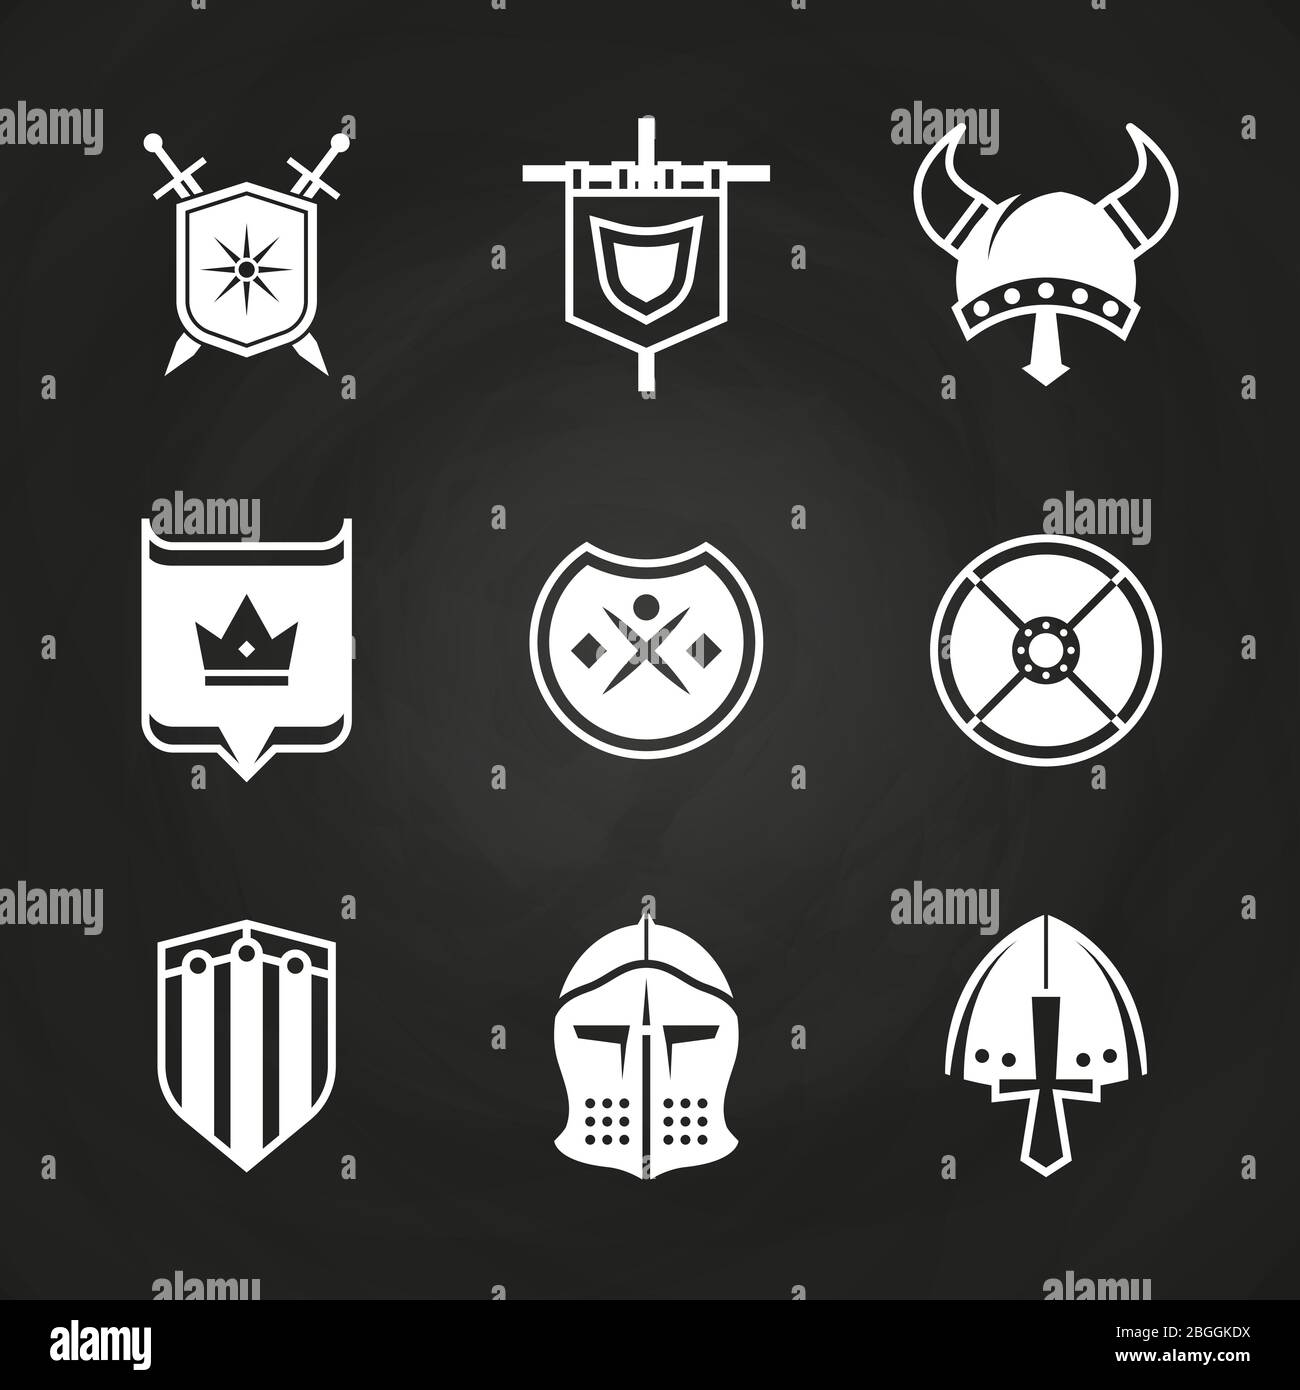 Weiße Silhouette viking Ritter Helme und Schilde Symbole isoliert auf schwarz. Vektorgrafik Stock Vektor